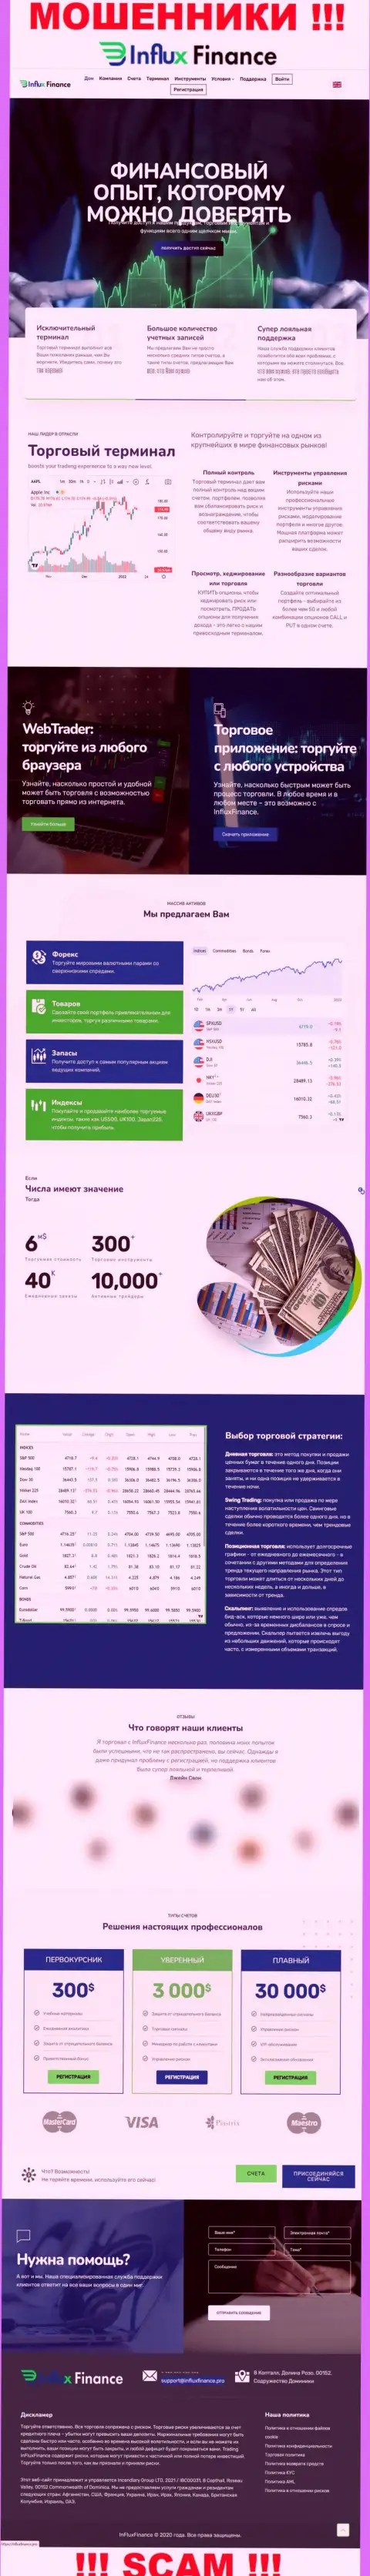 Фейковая информация от InFlux Finance на официальном информационном сервисе мошенников